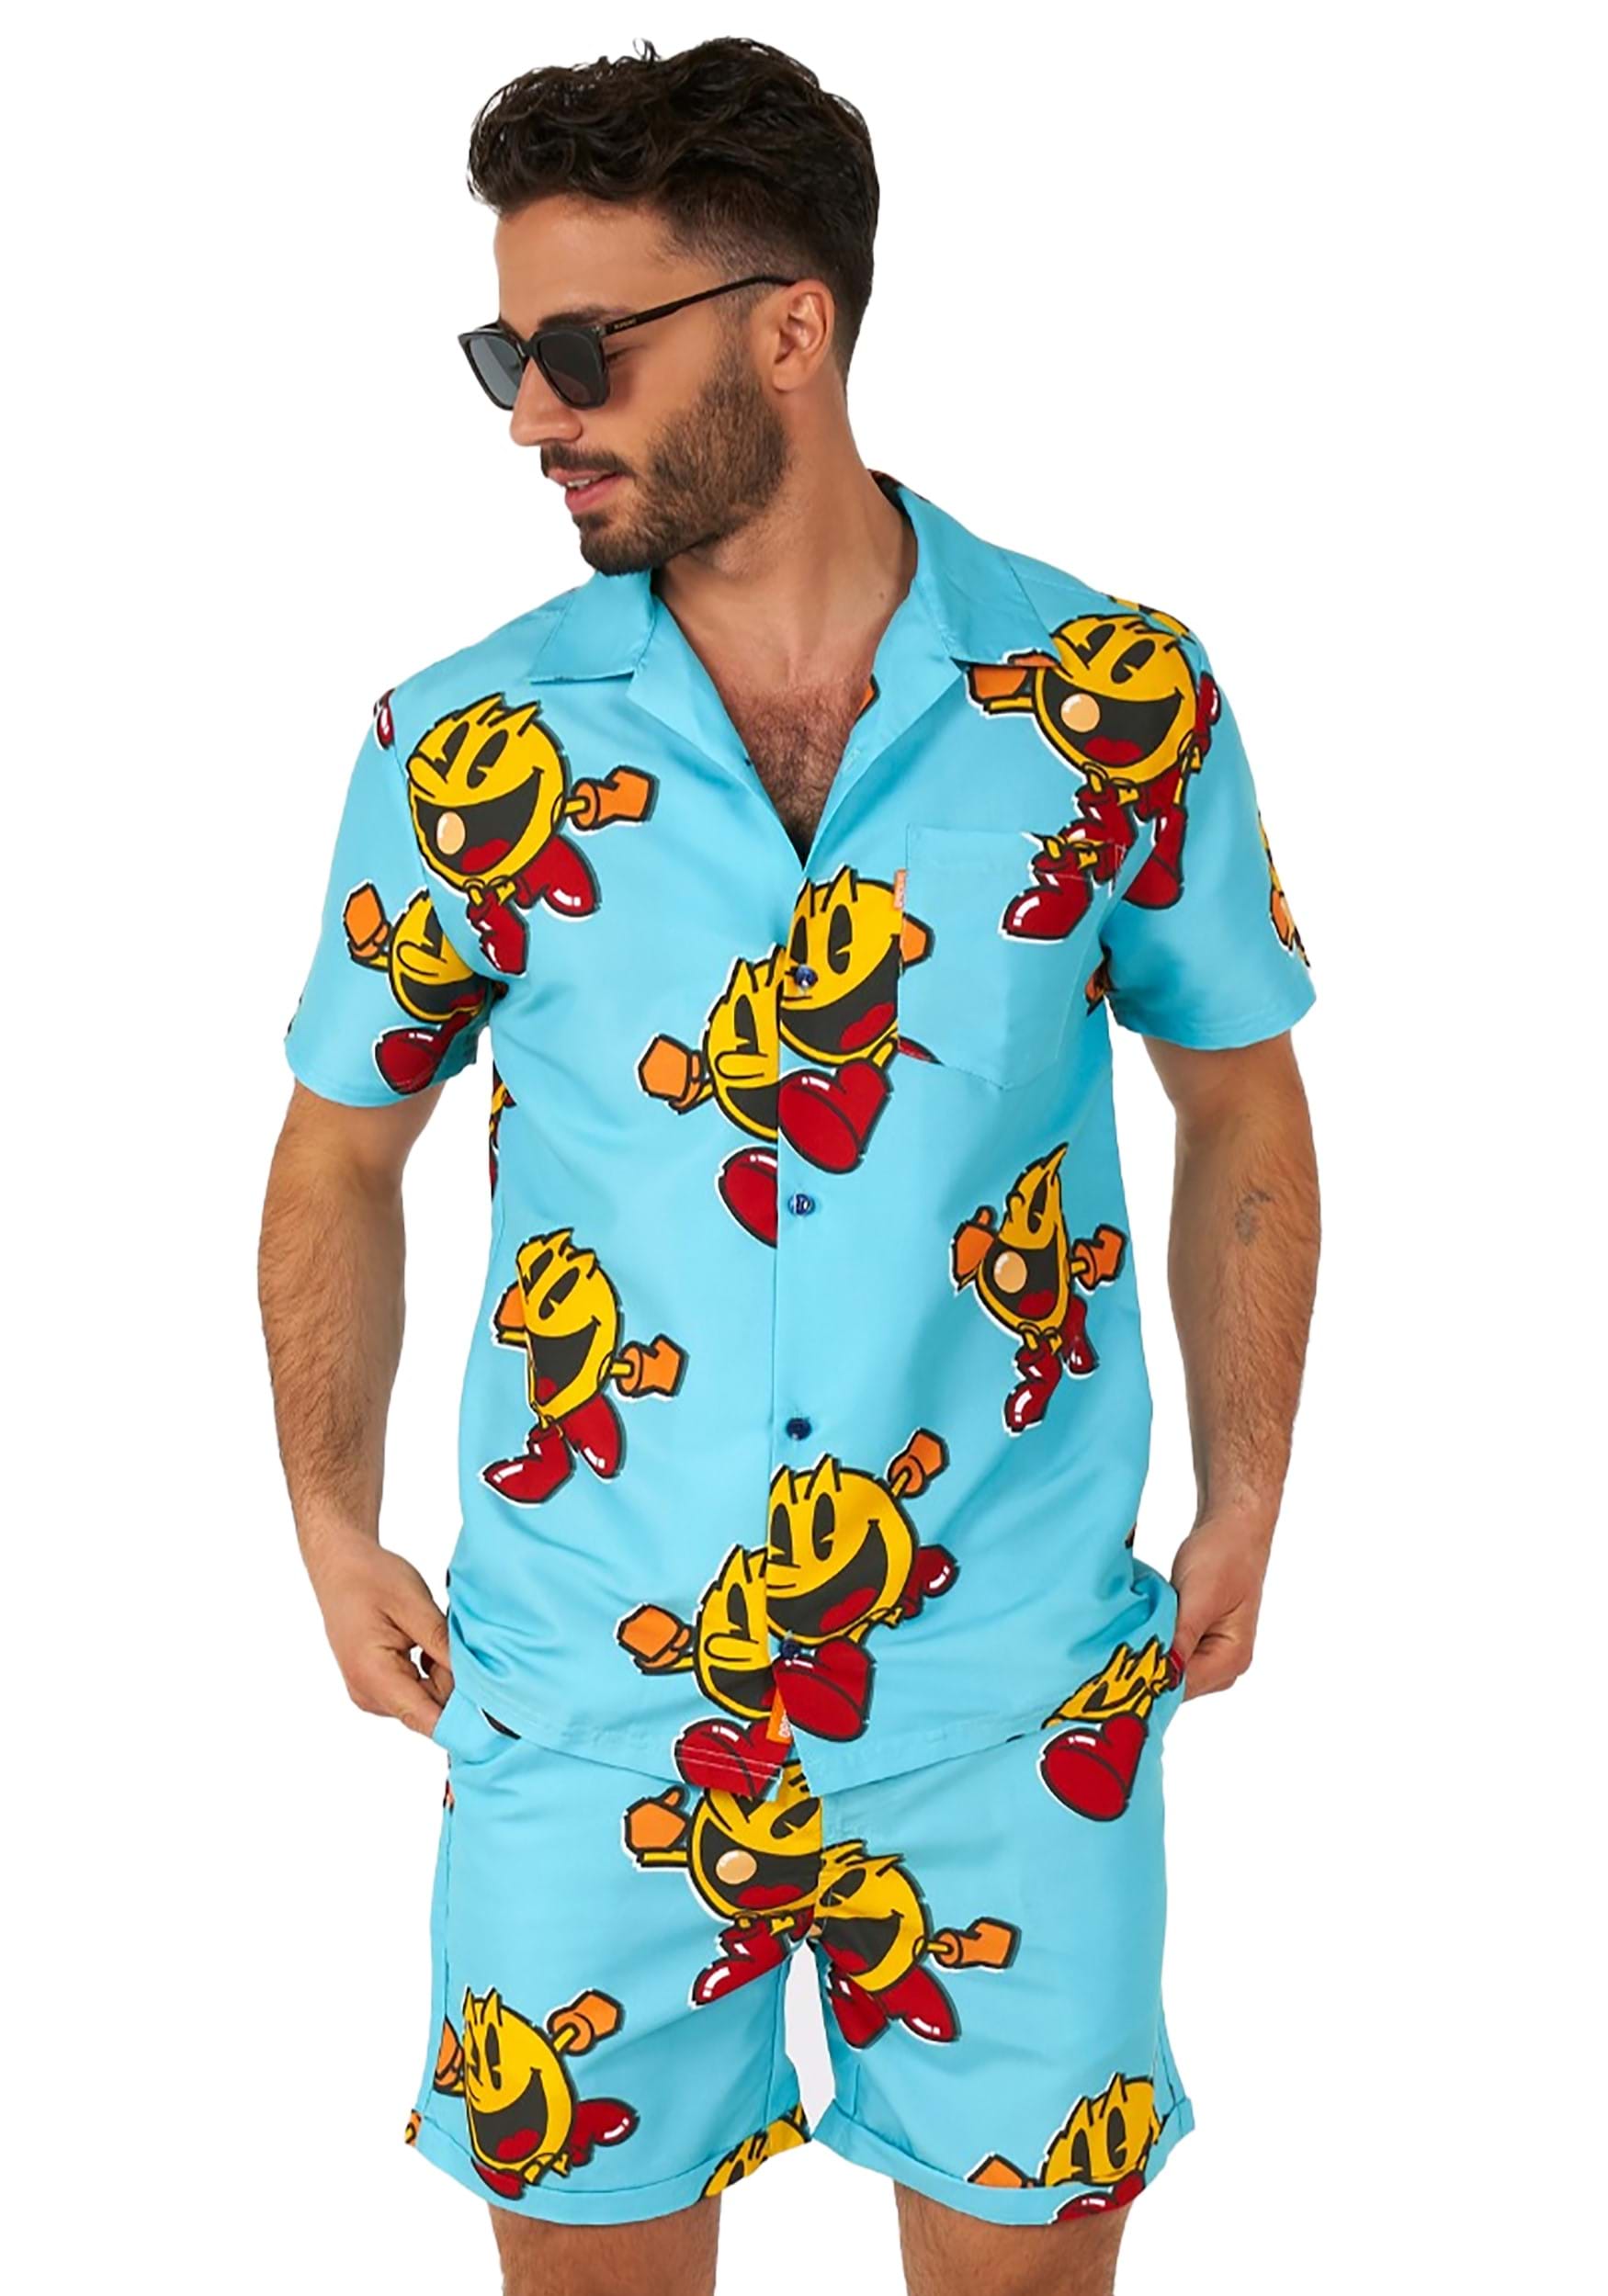 Image of Men's Pac-Man Waka Waka Swimsuit and Shirt ID OSSCOM1006-L